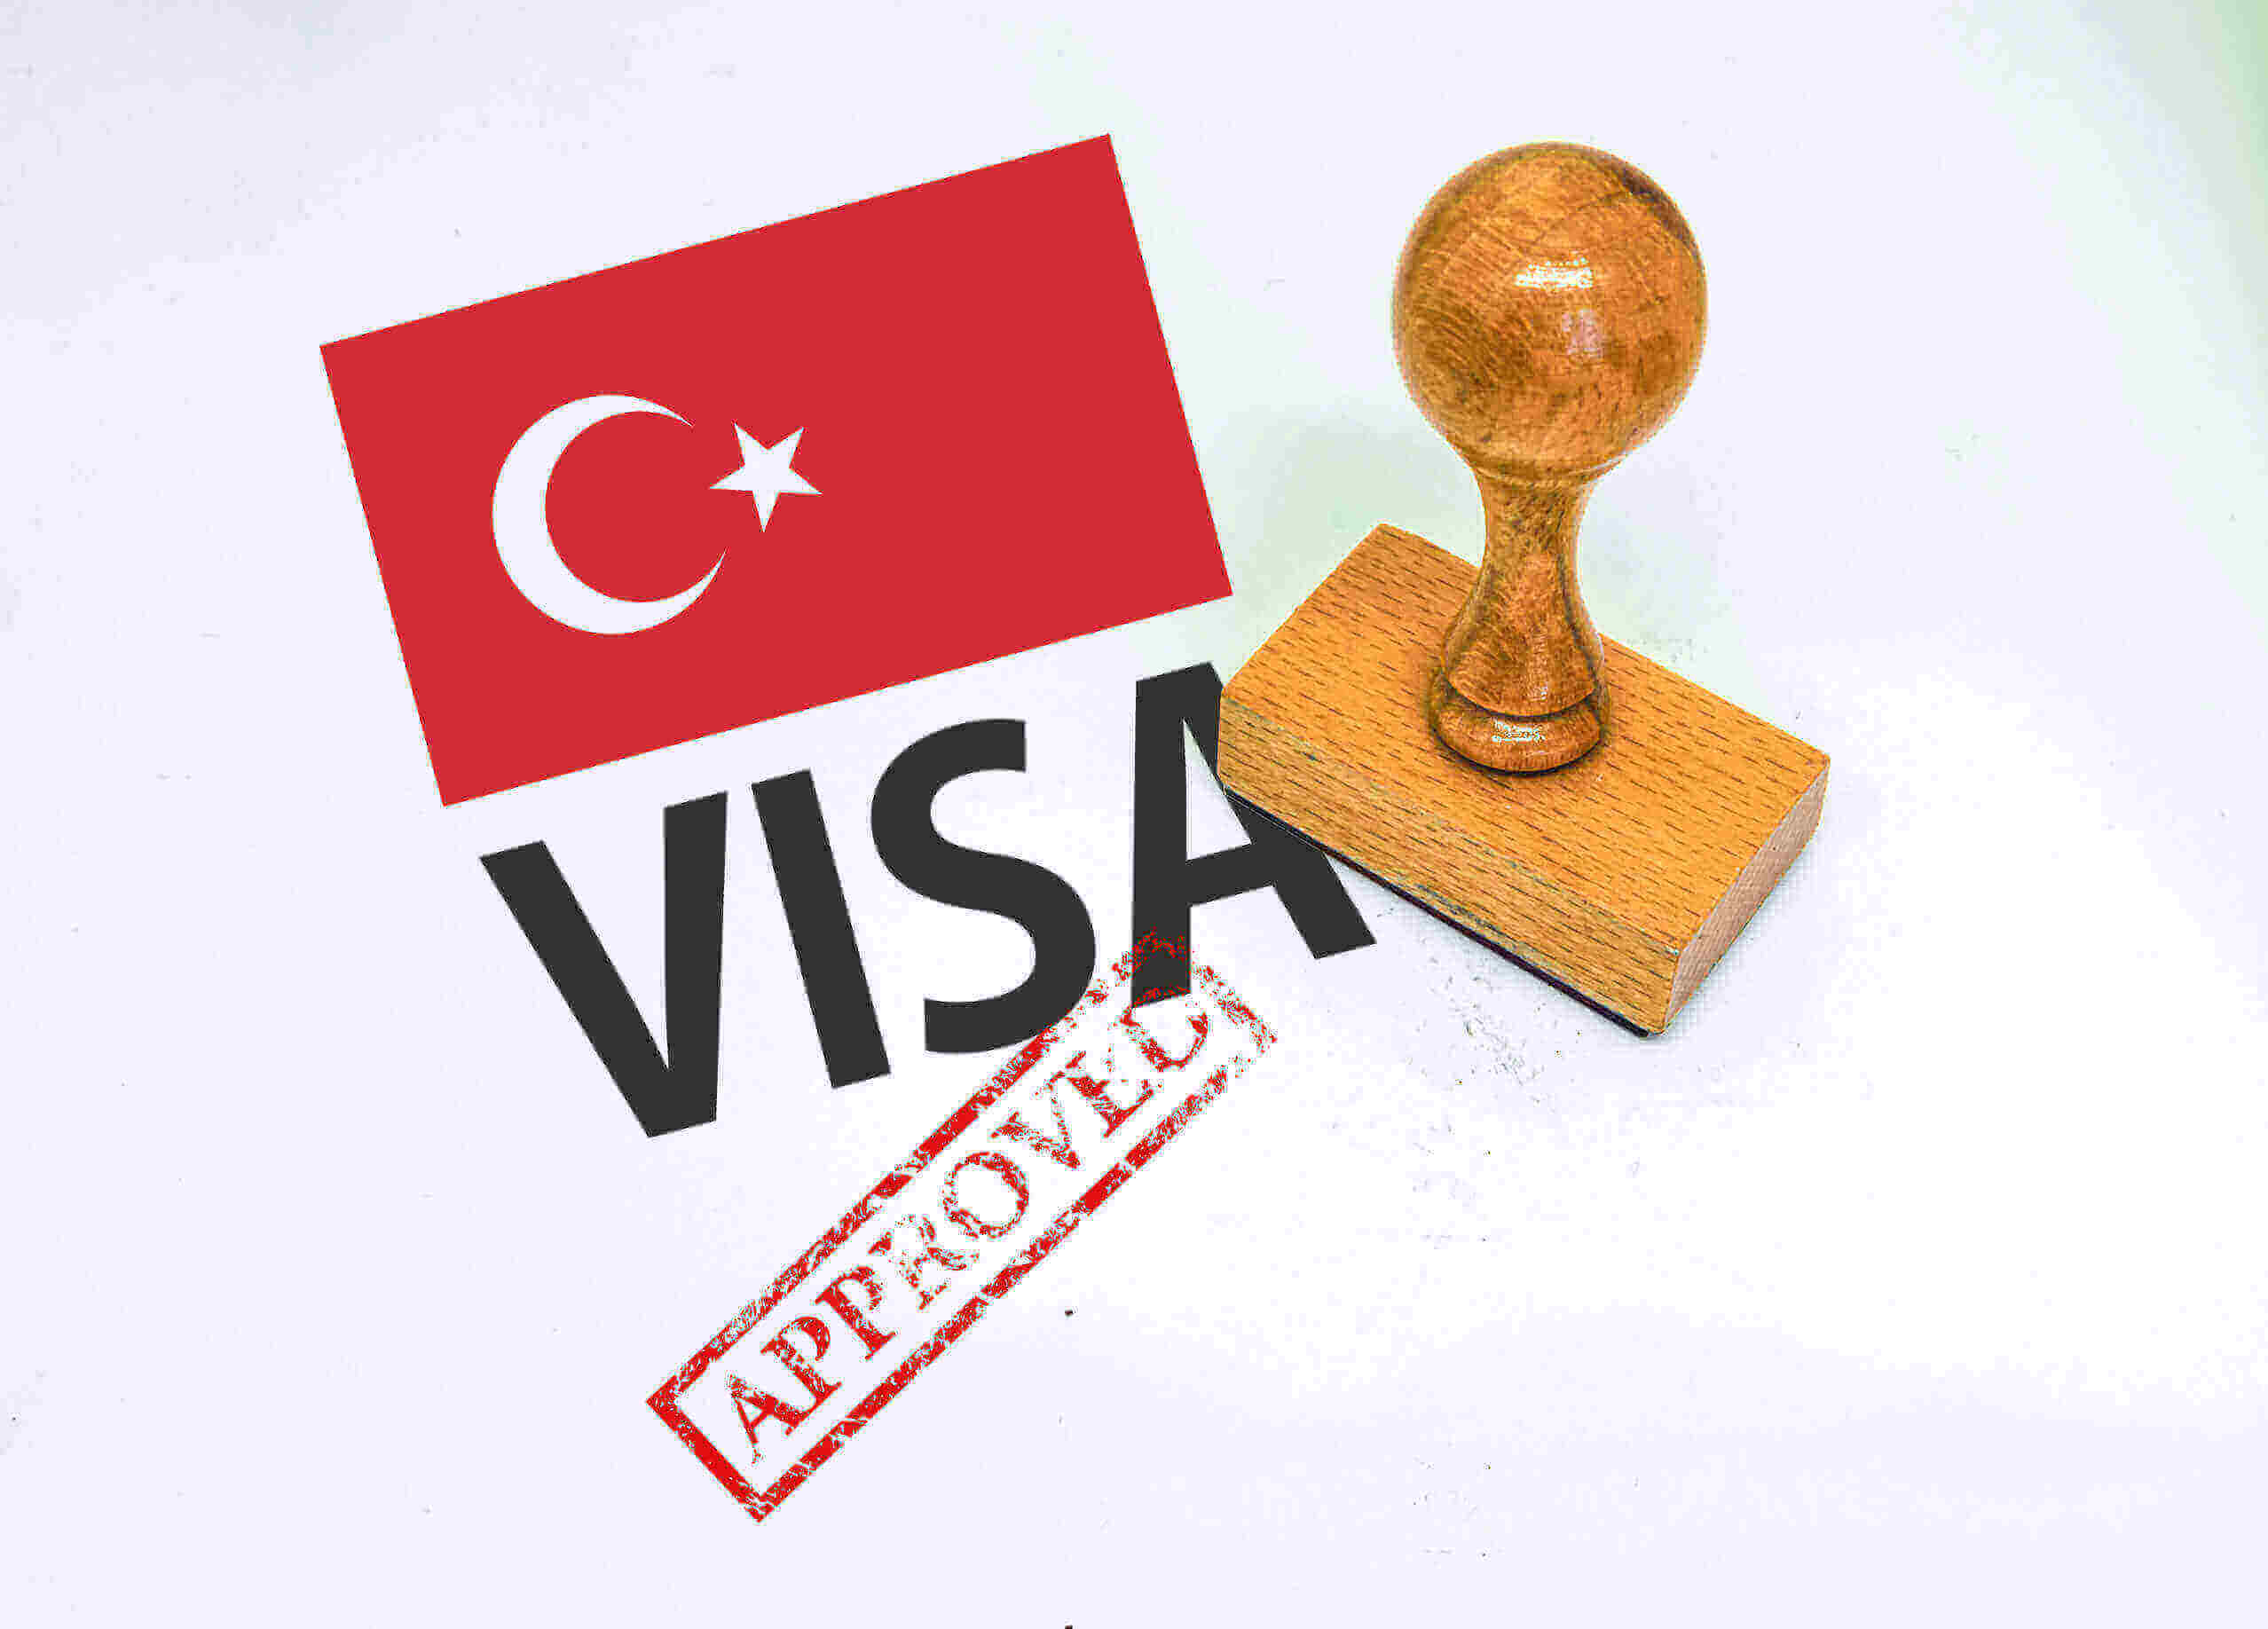 how much is turkey visit visa